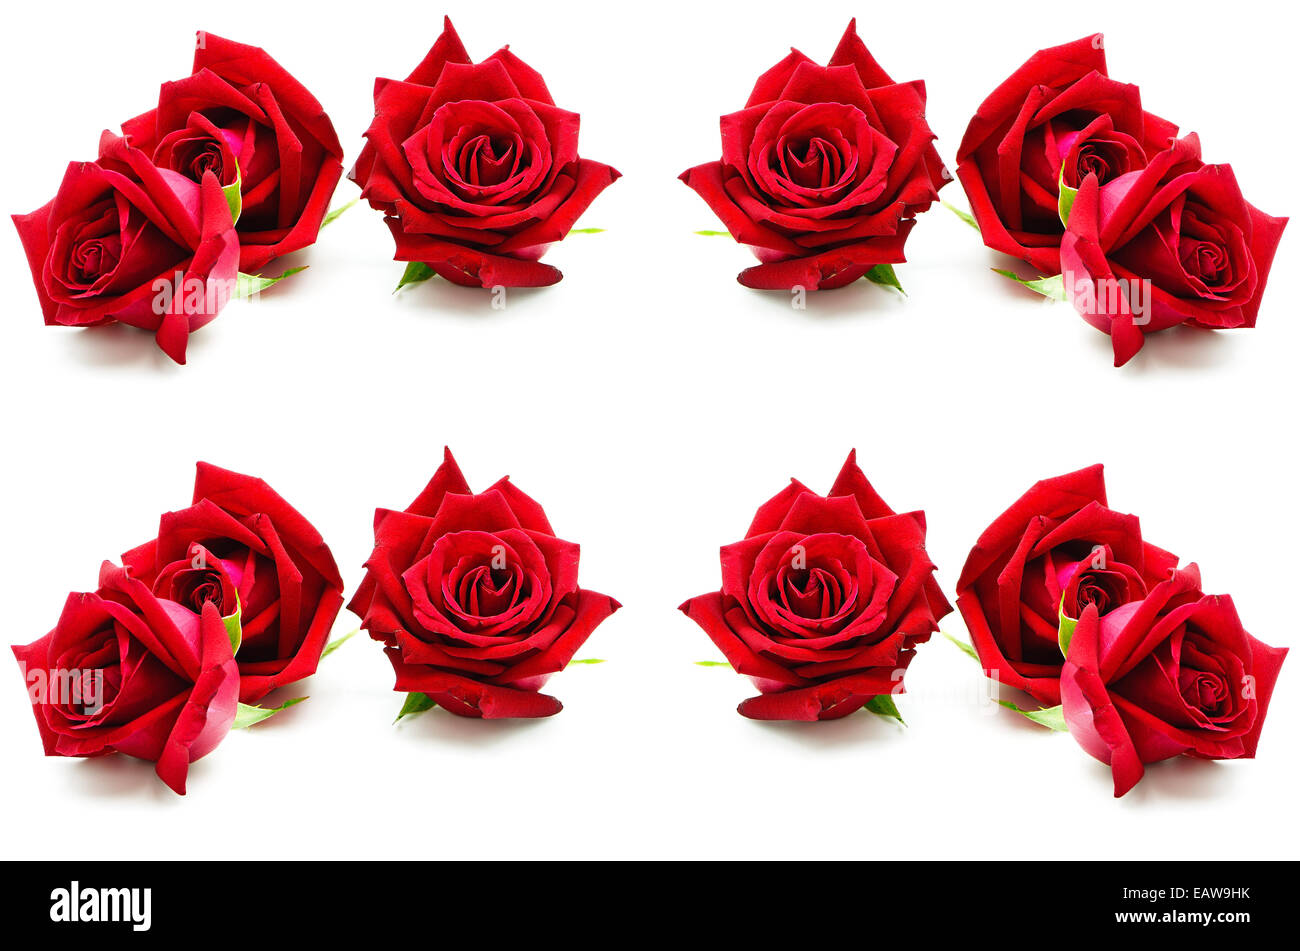 Belle rose rouge, isolé sur fond blanc Banque D'Images